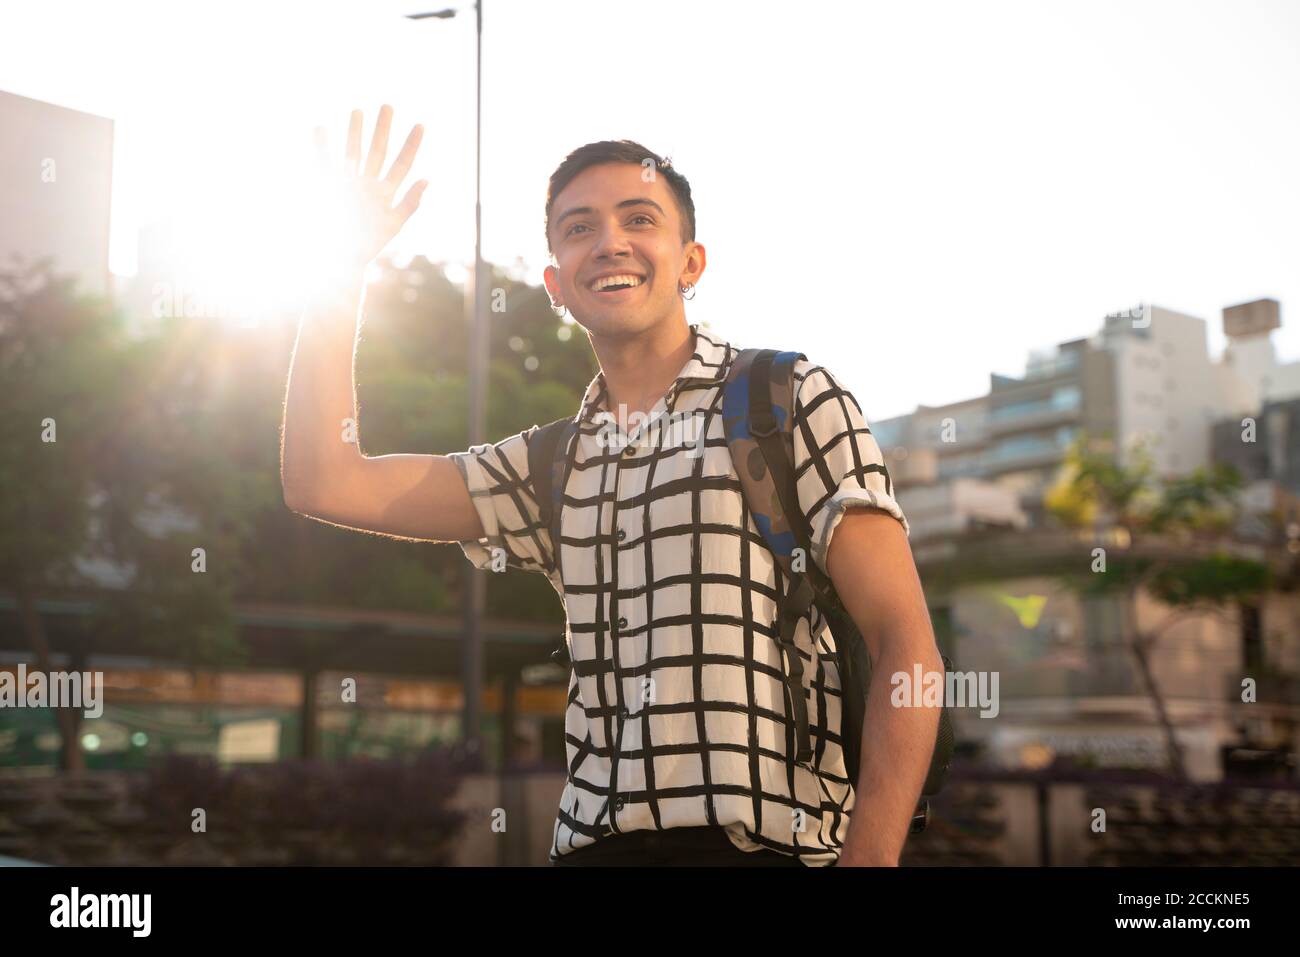 Lächelnder junger schwuler Mann winkt, während er in der Stadt gegen steht Himmel Stockfoto